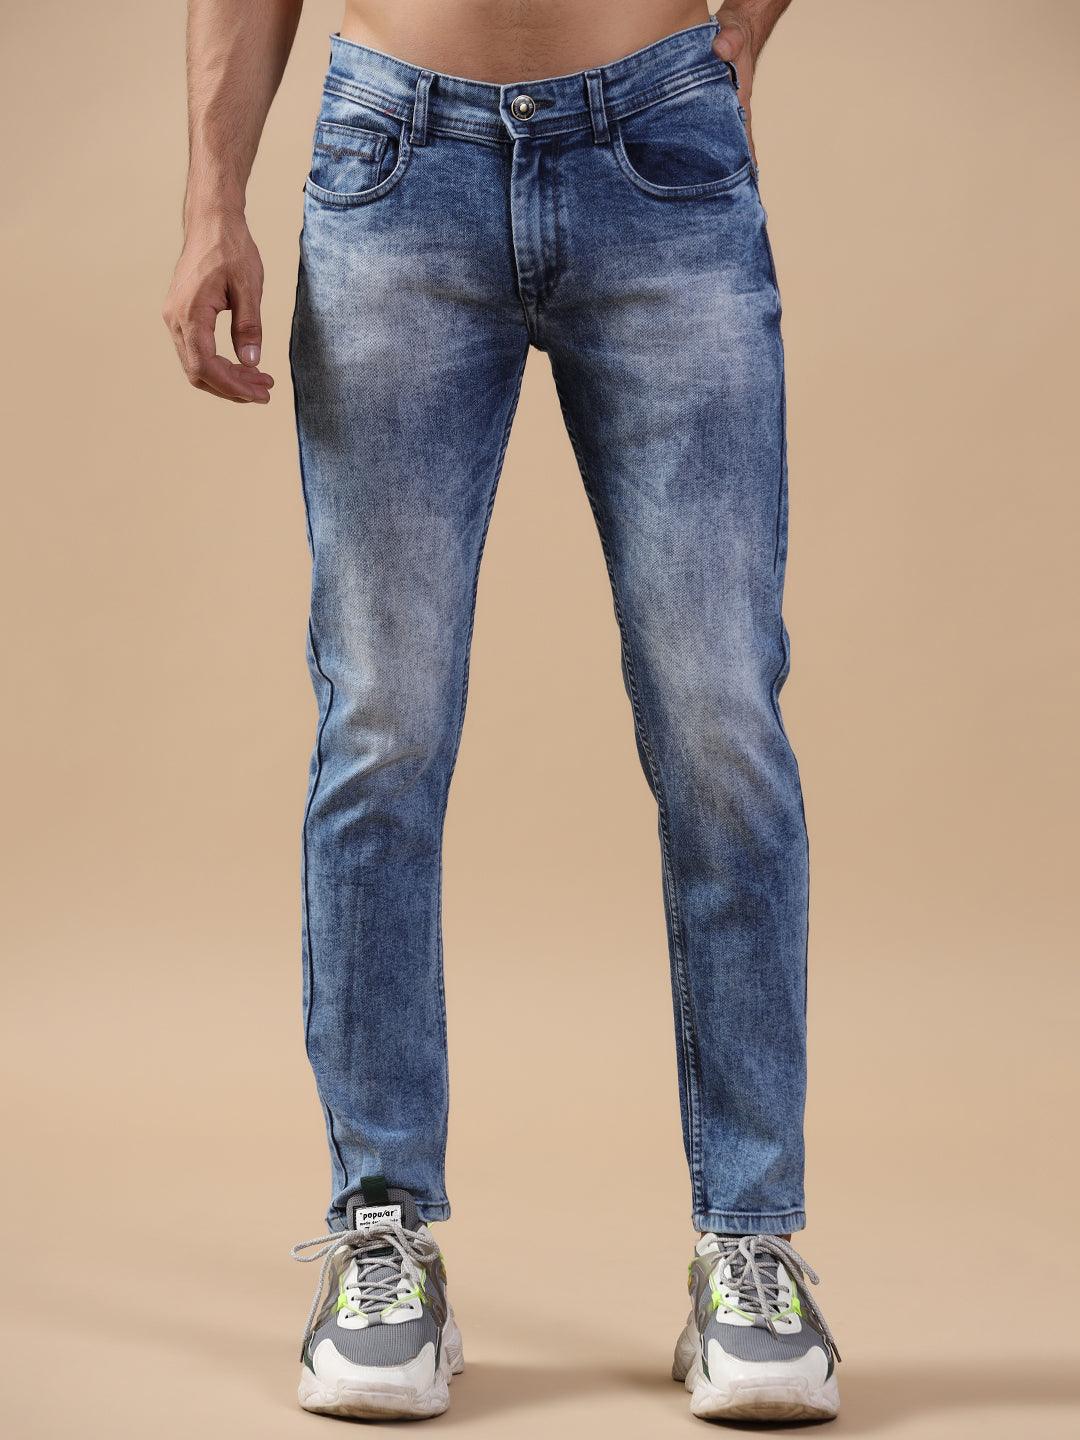 Skinny Jeans - Light denim blue - Men | H&M IN